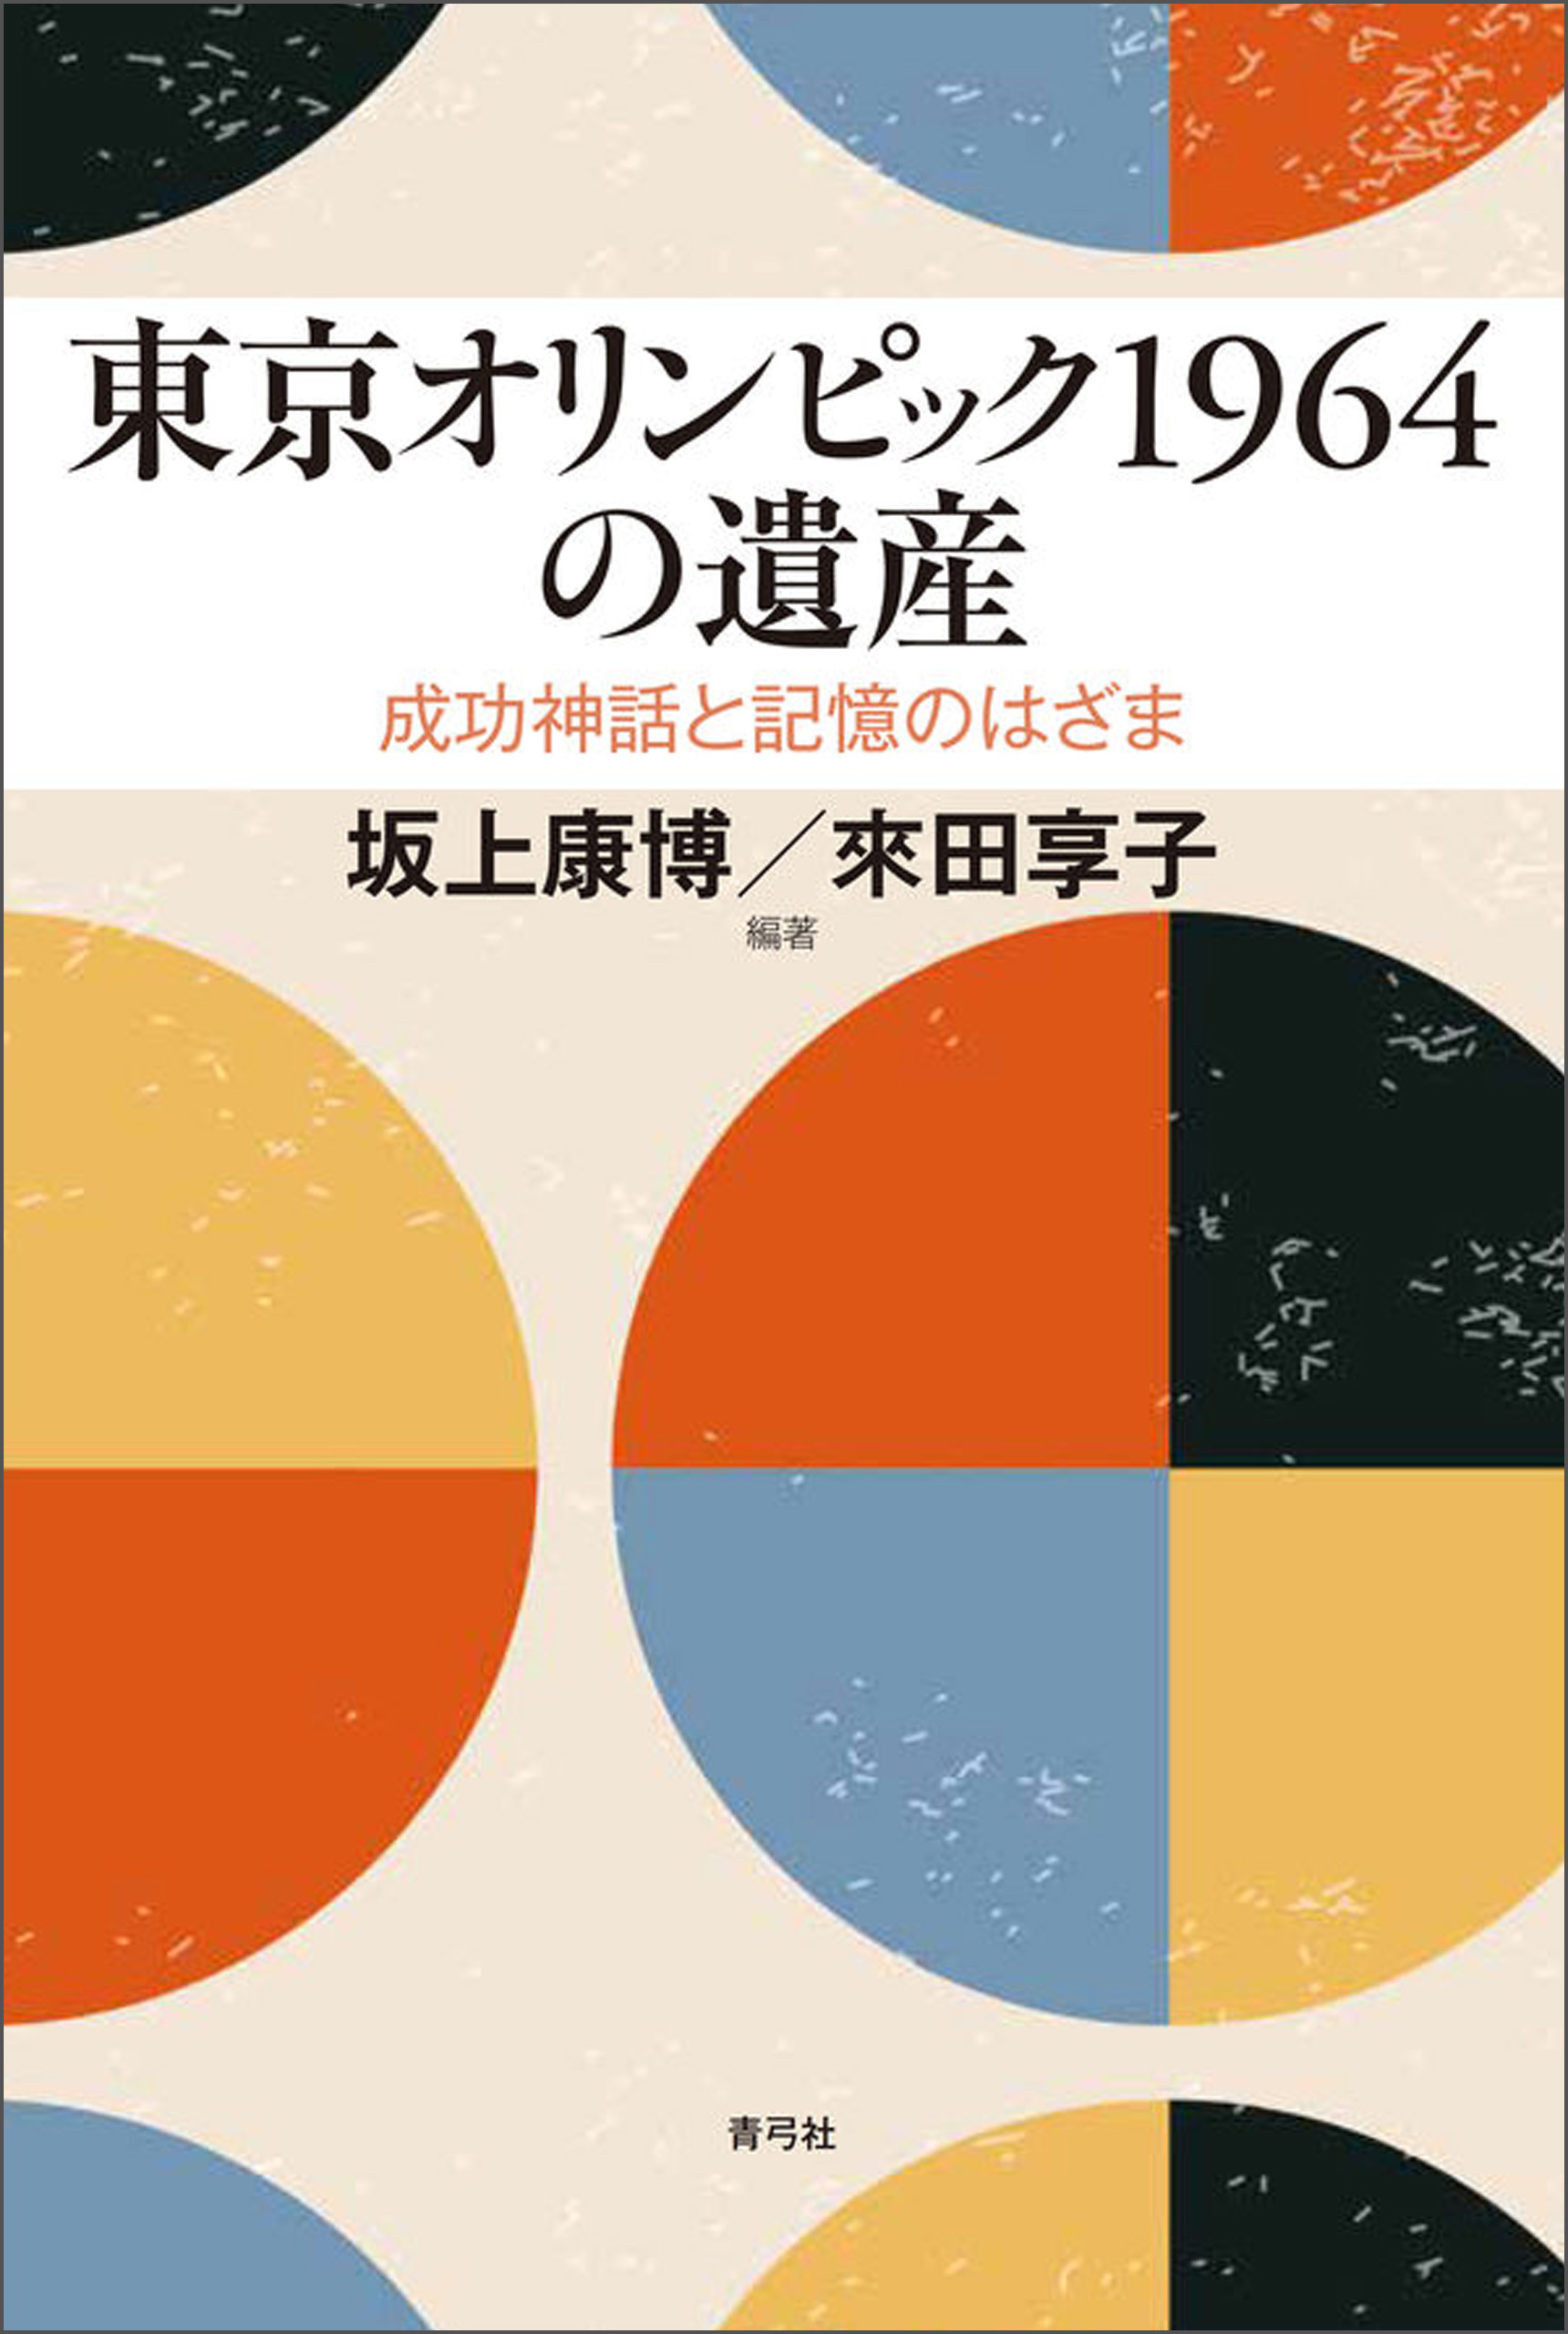 1964年東京五輪公式報告書-